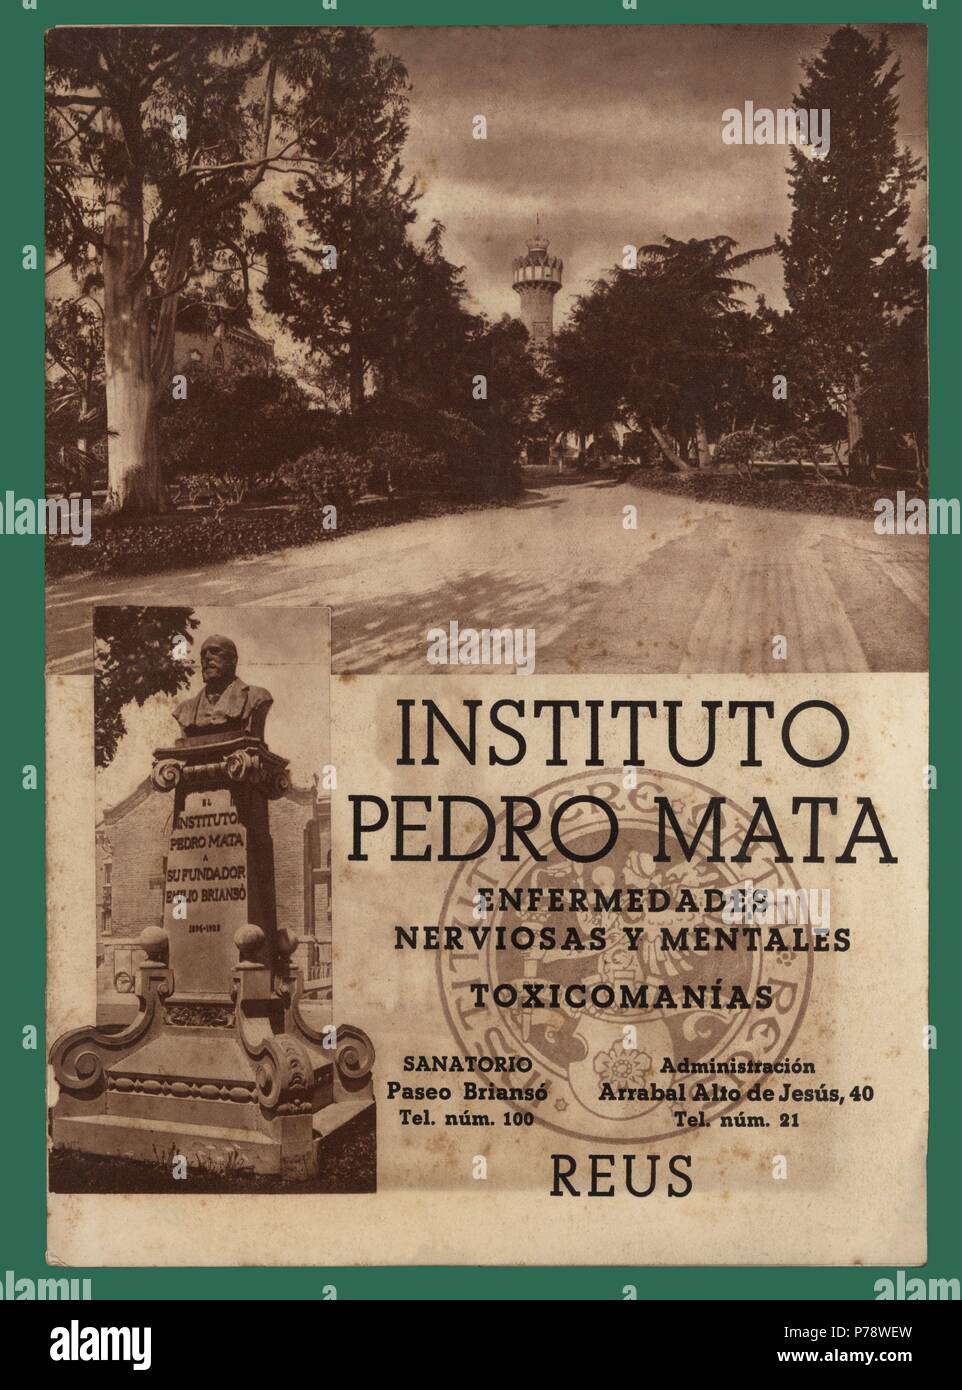 Publicidad del sanatorio mentale Instituto Pedro Mata, de Reus. Año 1940. Stockfoto